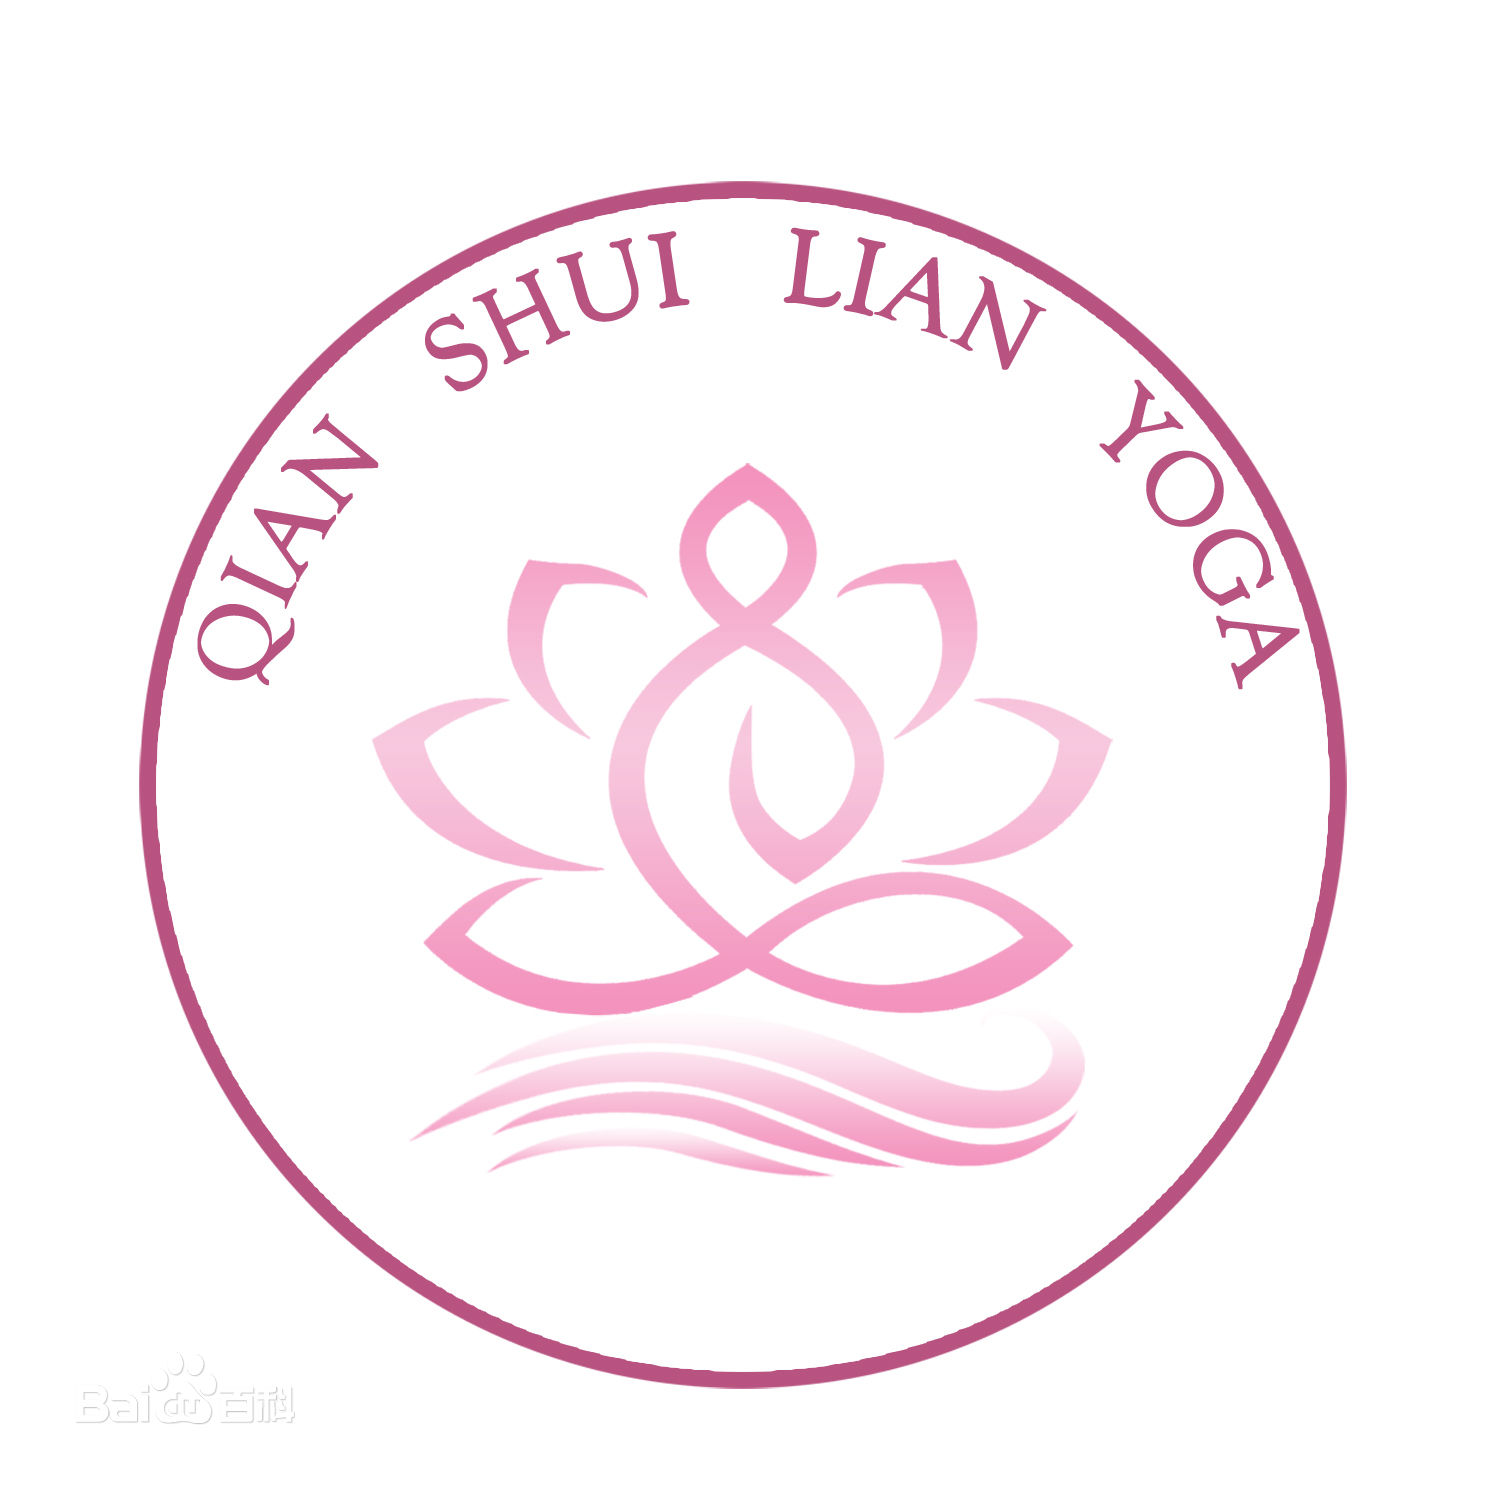 上海千水莲瑜伽培训中心